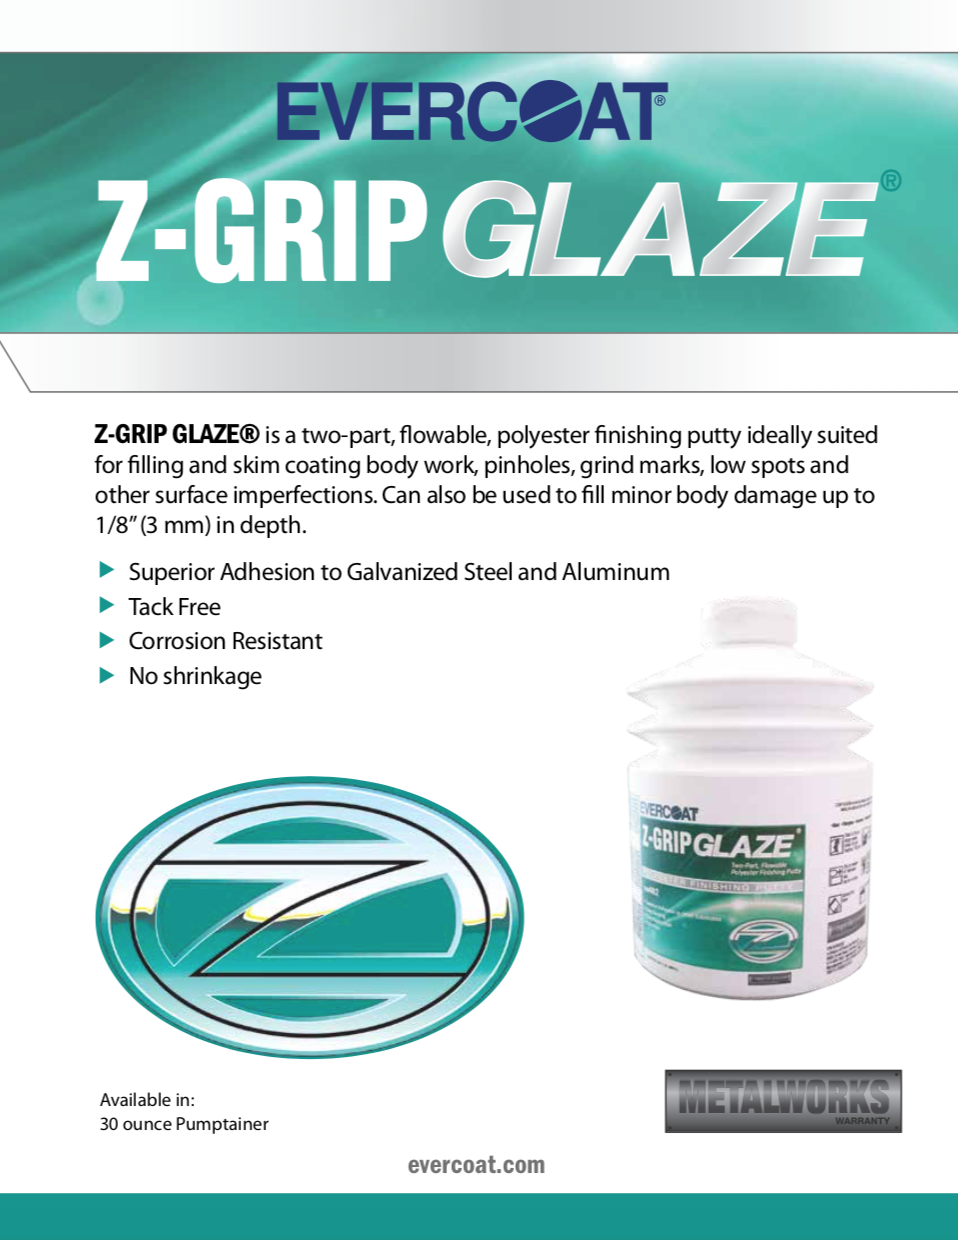 Evercoat Z-Grip Glaze